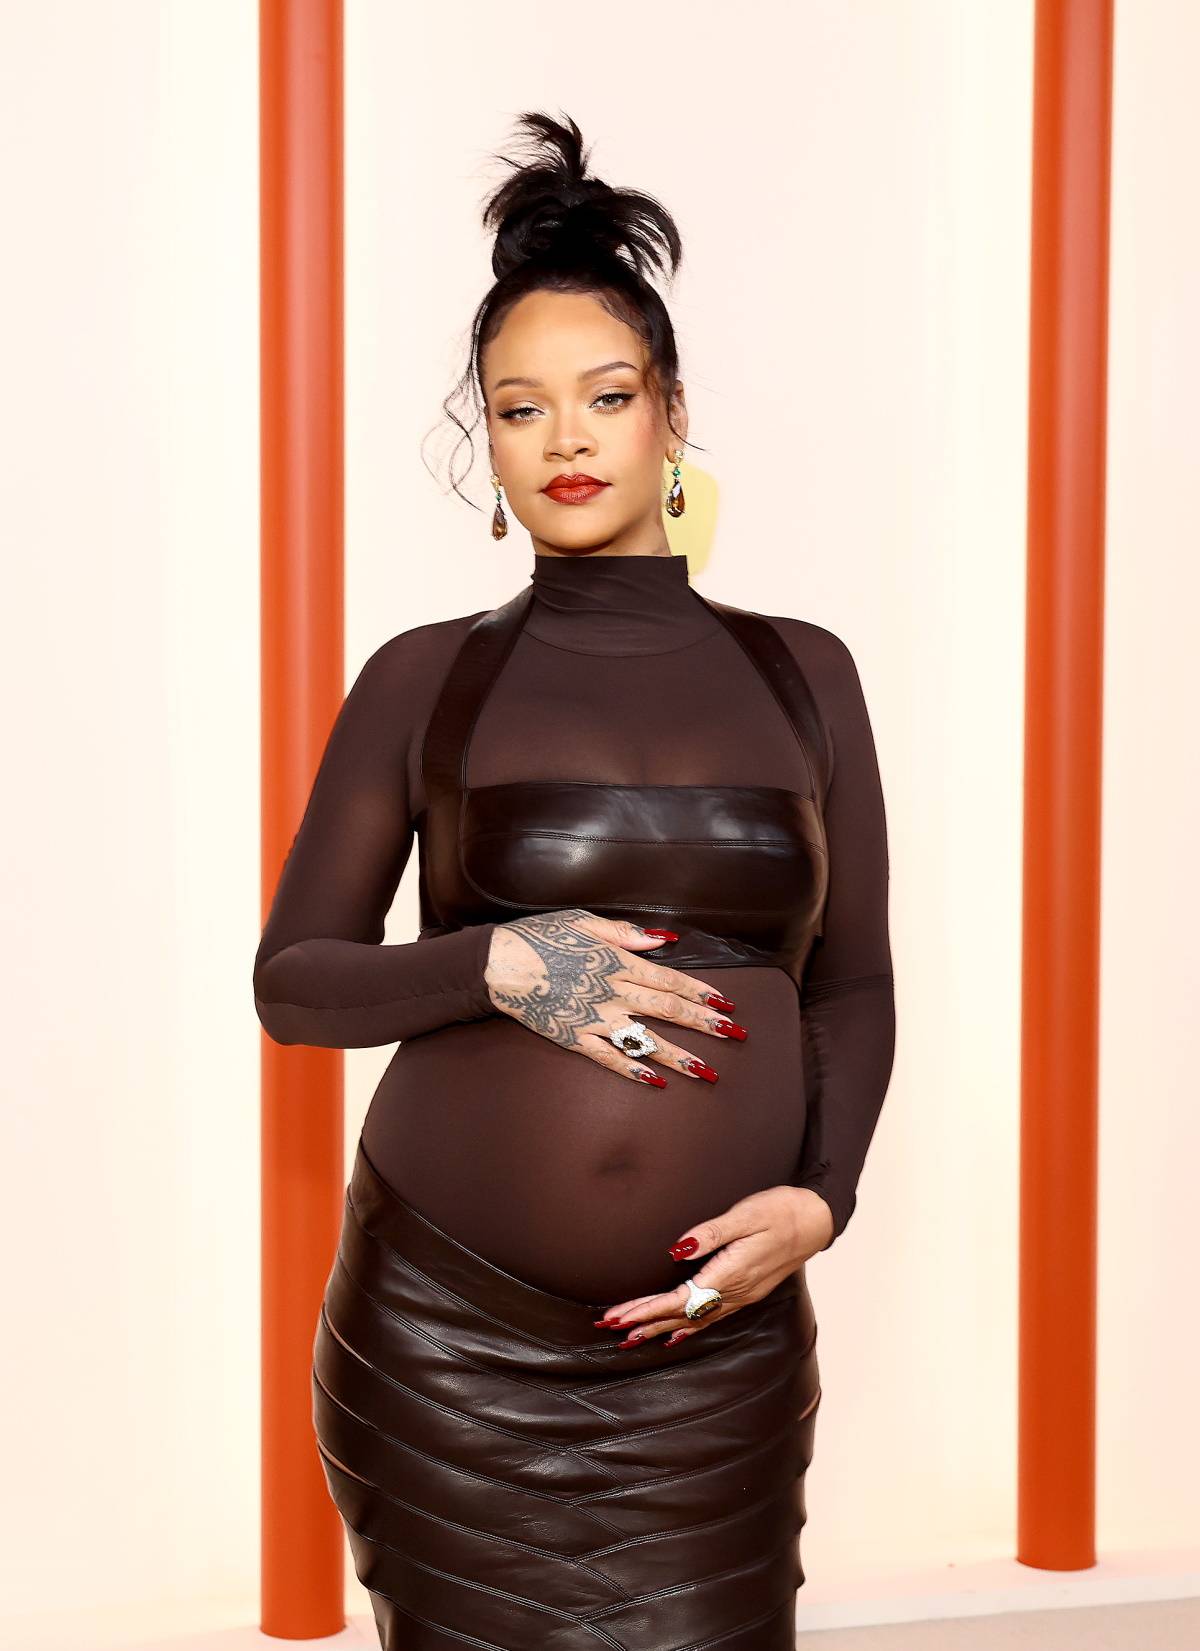 Rihanna na zdjęciach z kampanii reklamowej kolekcji biustonoszy swojej marki Savage x Fenty karmi piersią syna, RZA.